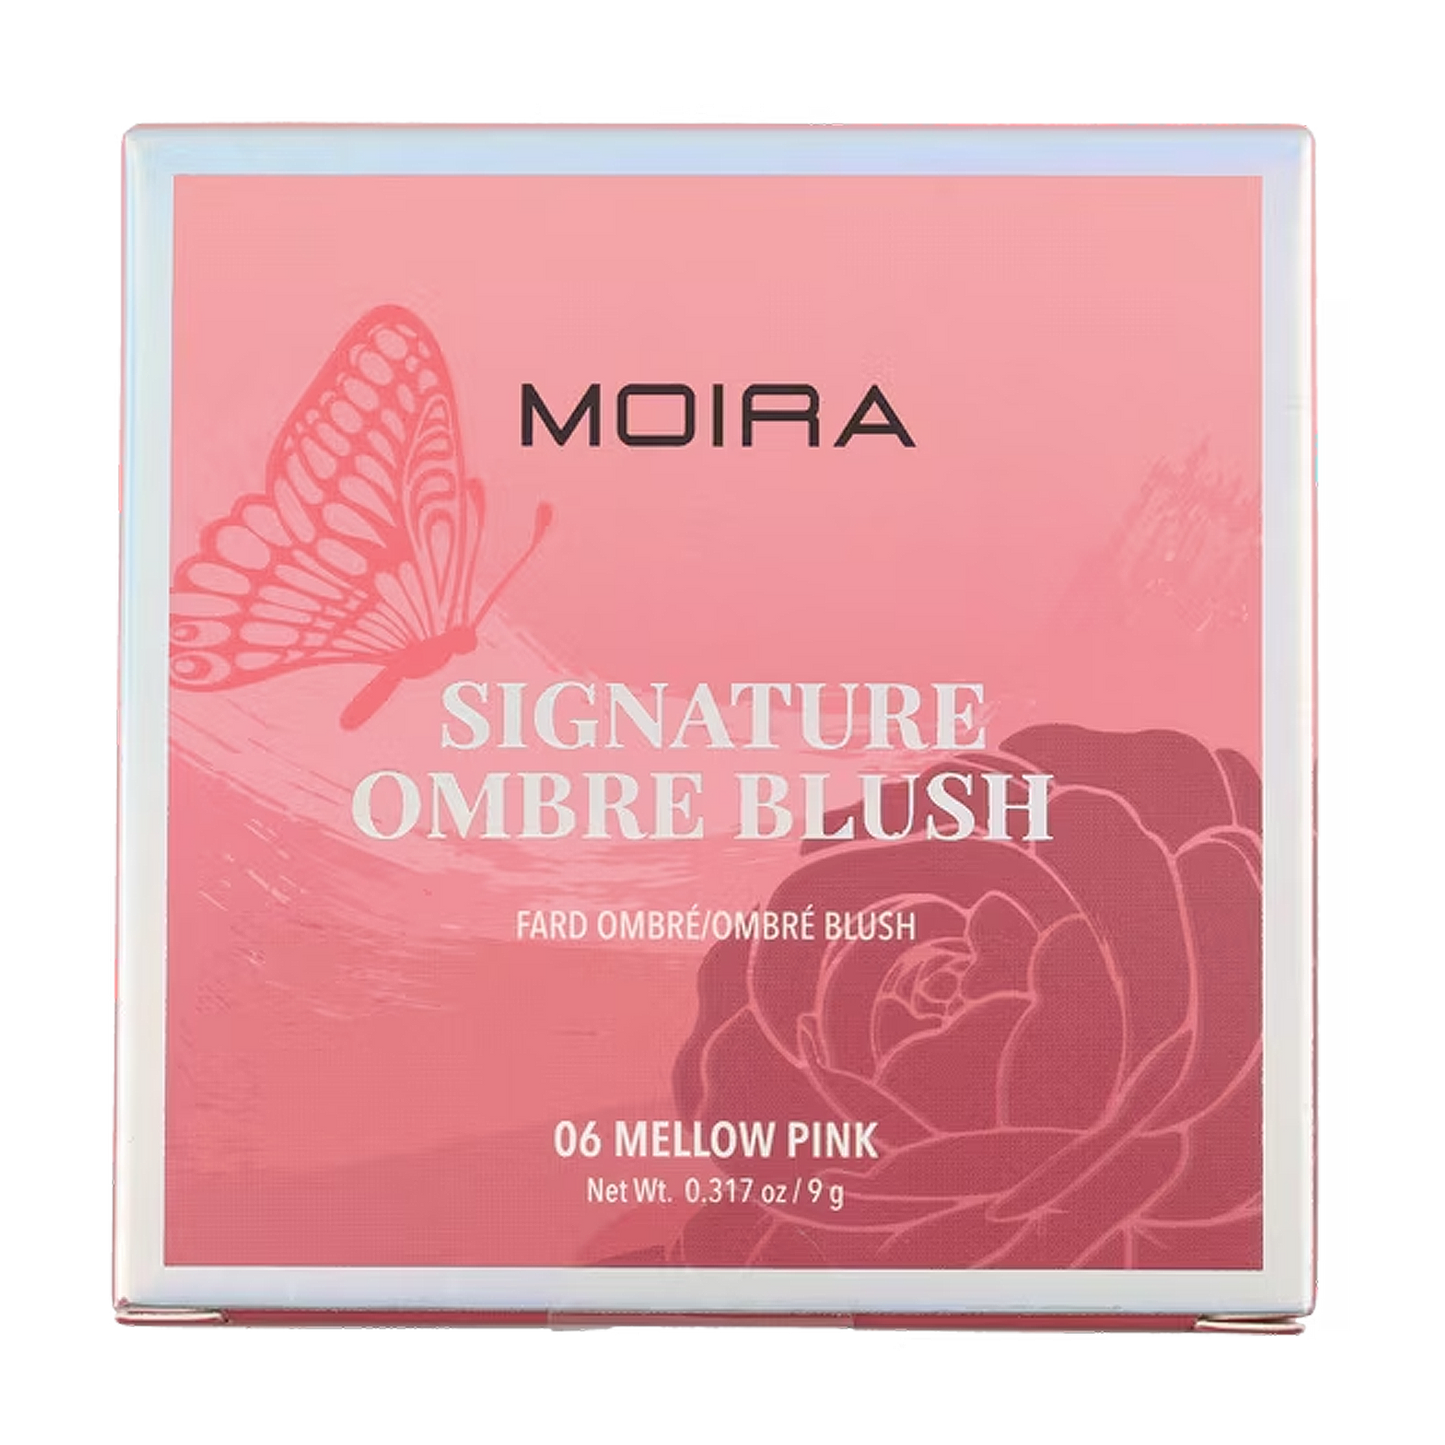 Rubor En Polvo Signature Ombre Blush Mod. 06 Mellow Pink Marca Moira®